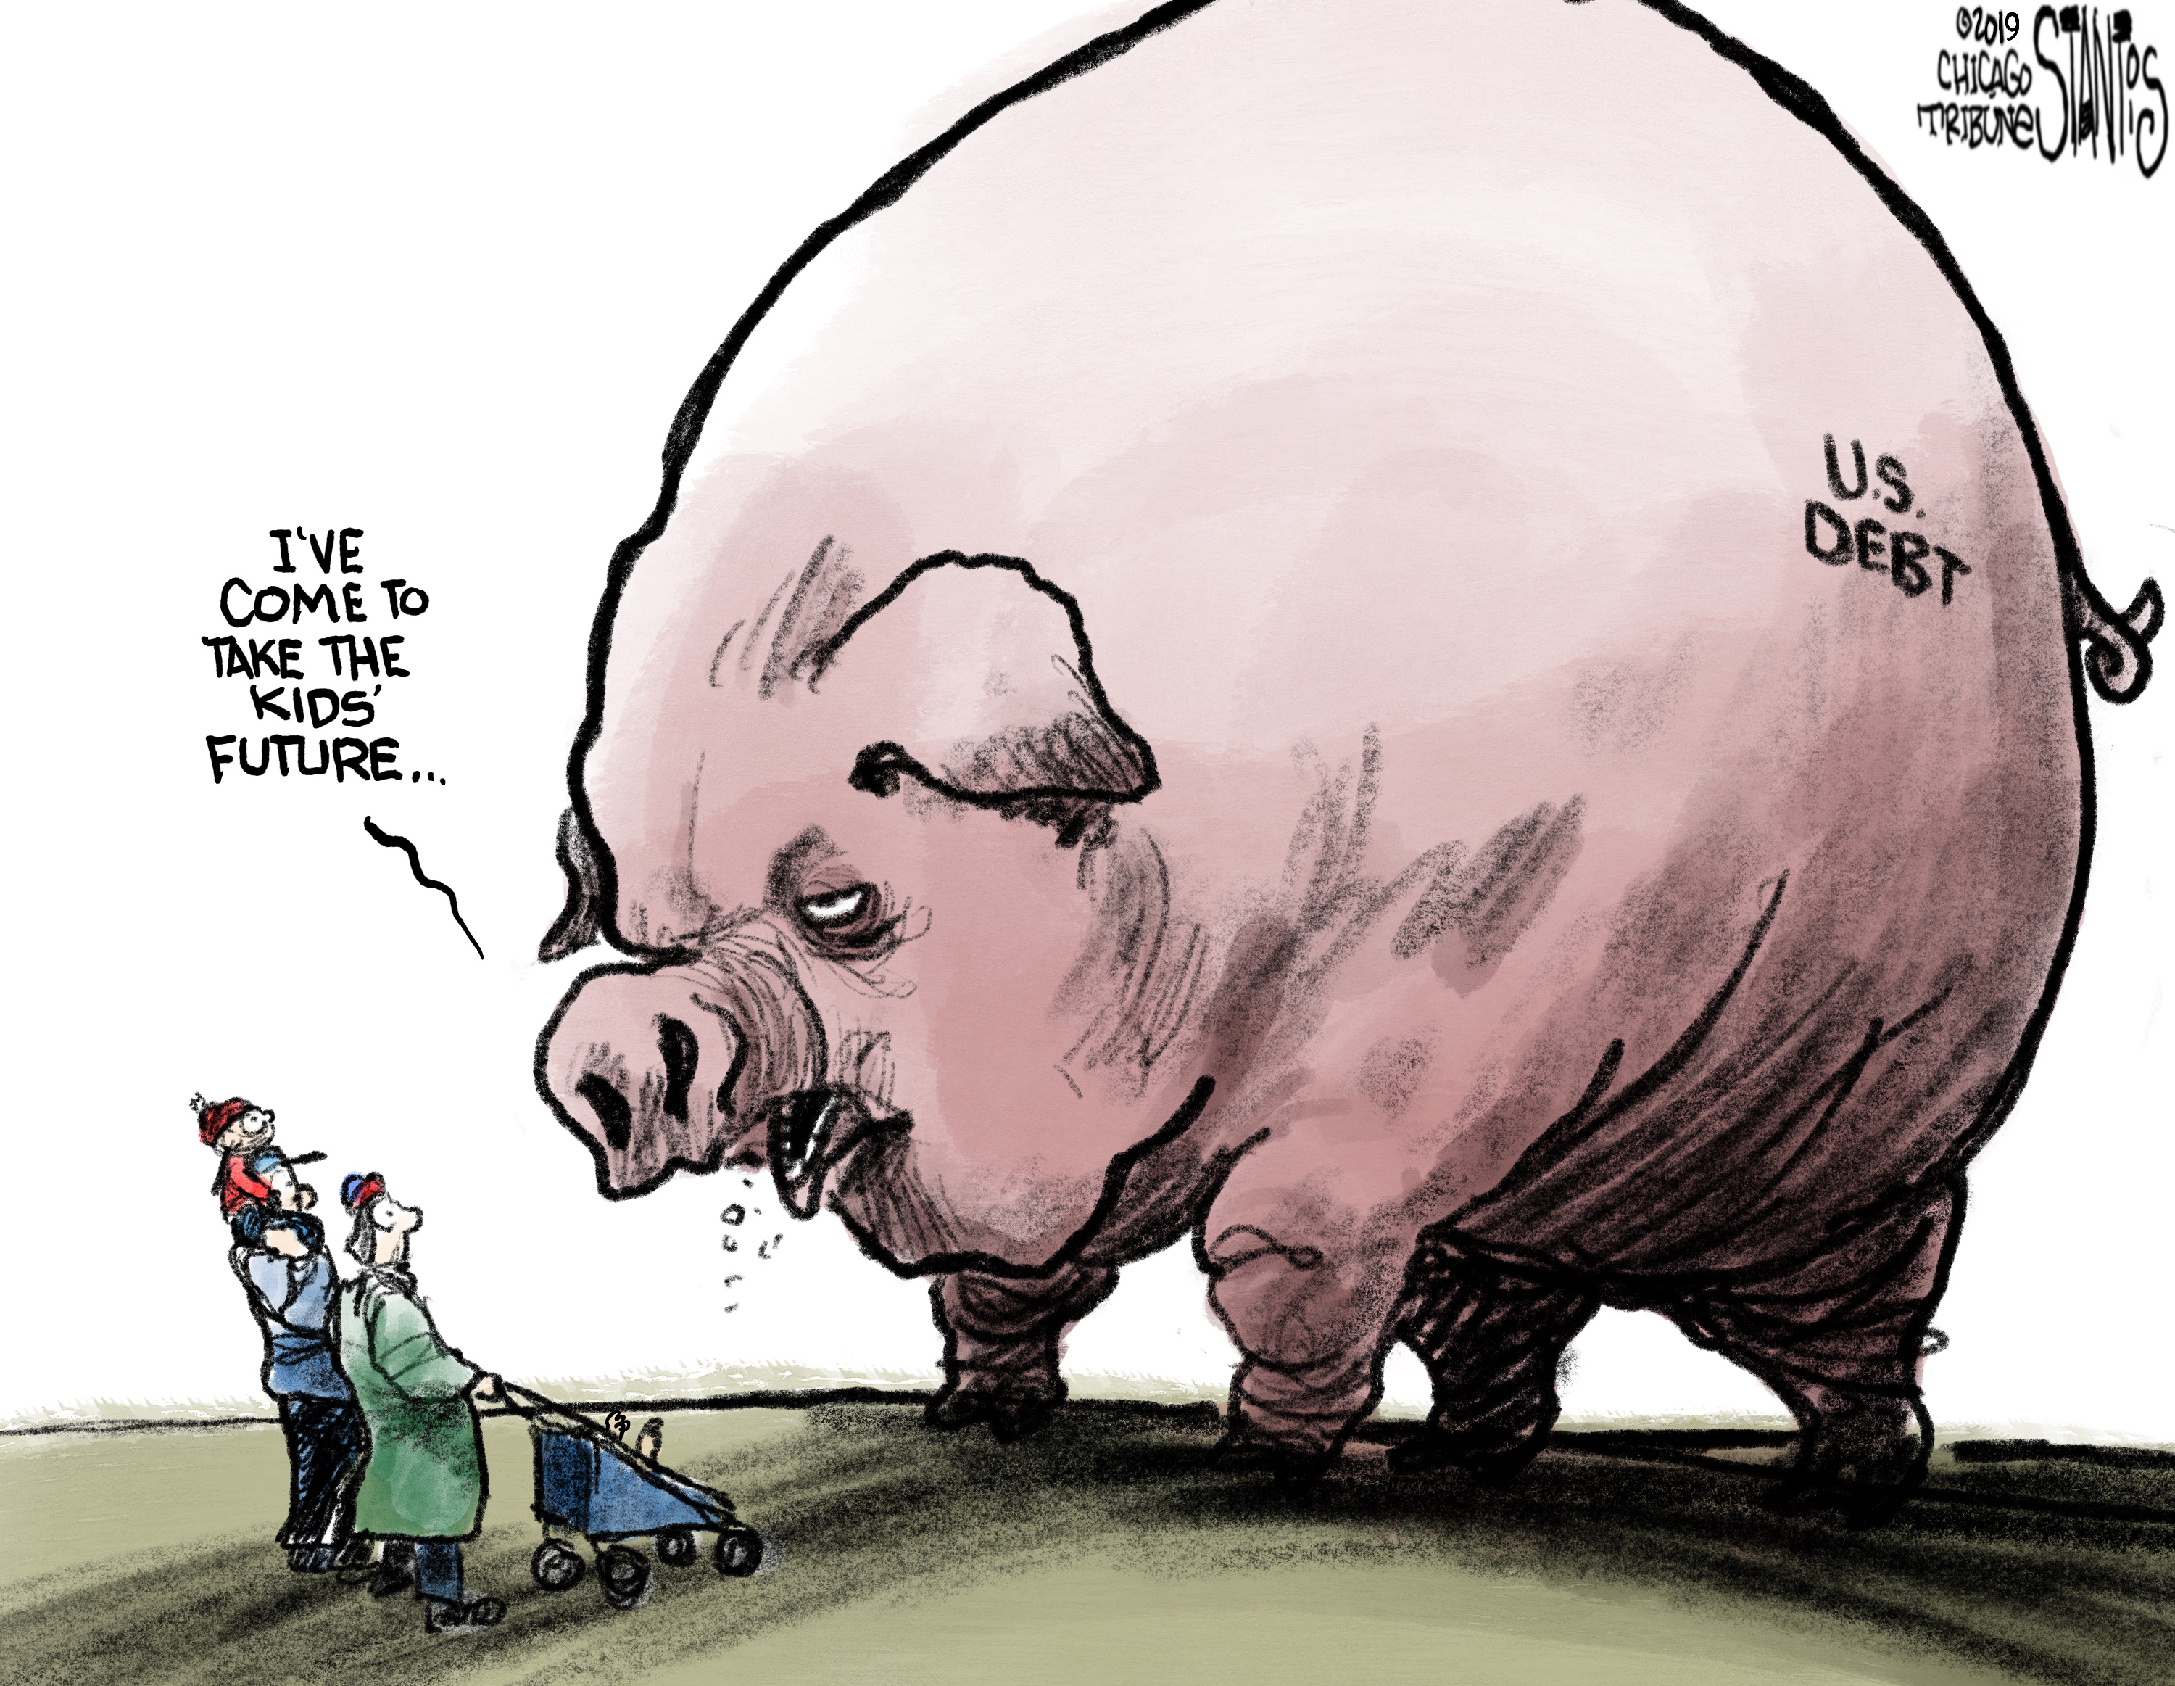 Cartoon of giant pig representing U.S. deficit